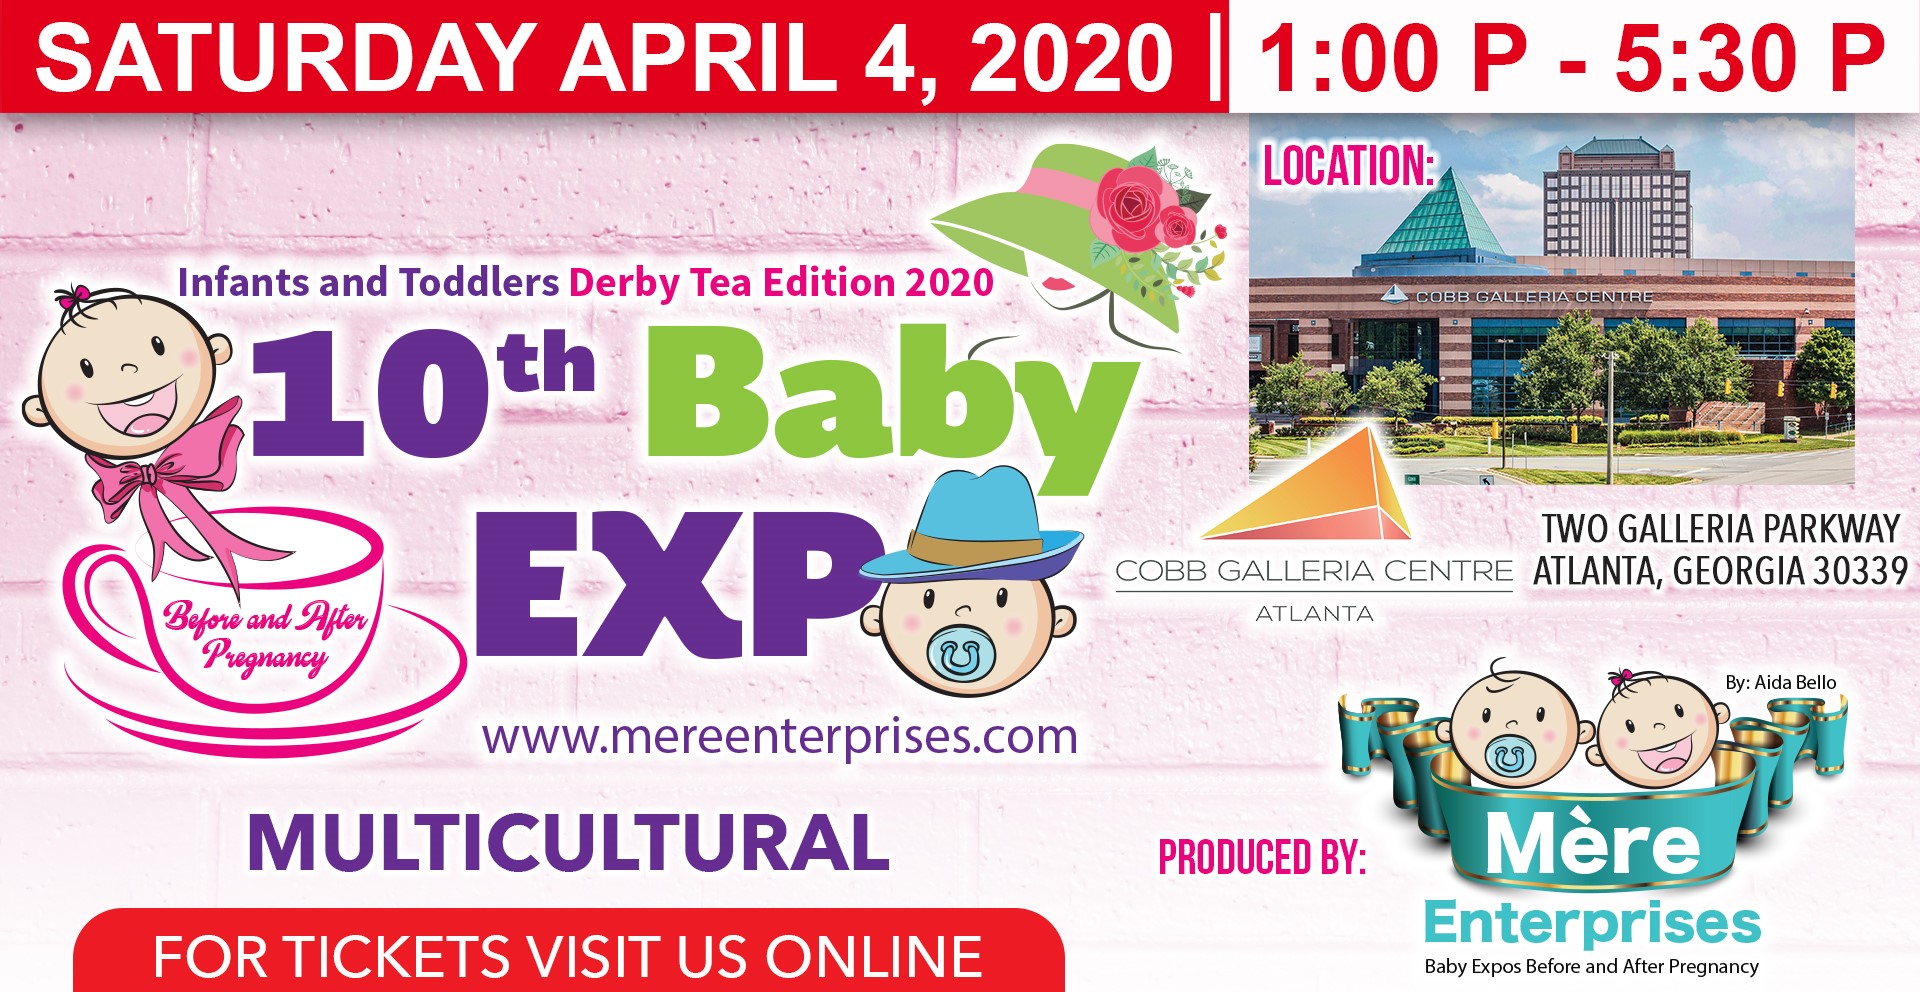 baby expo dates 2019